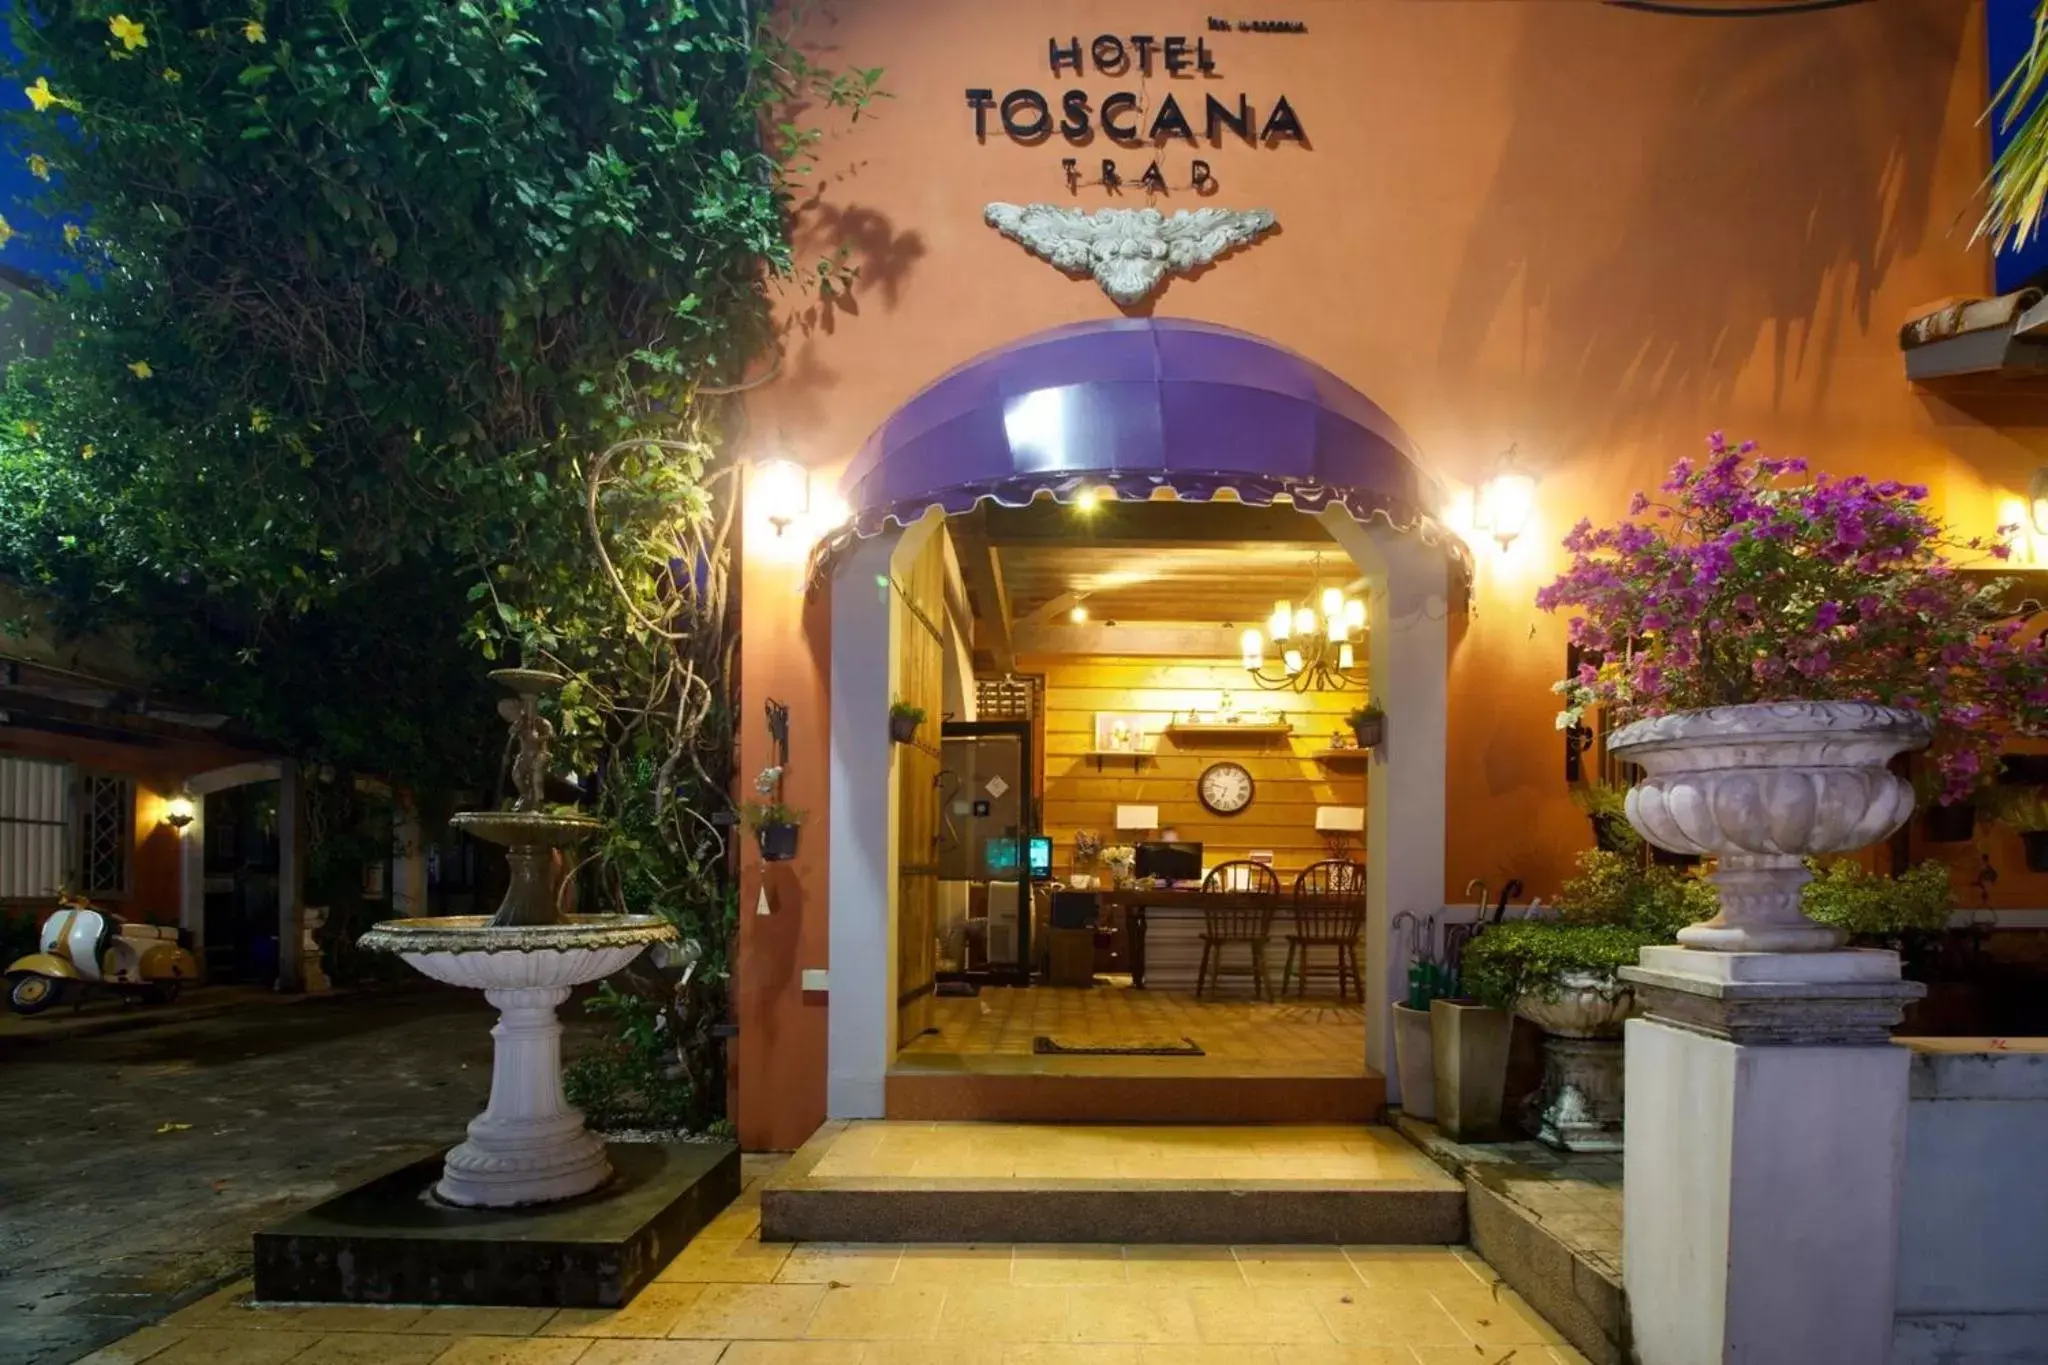 Facade/Entrance in Hotel Toscana Trat